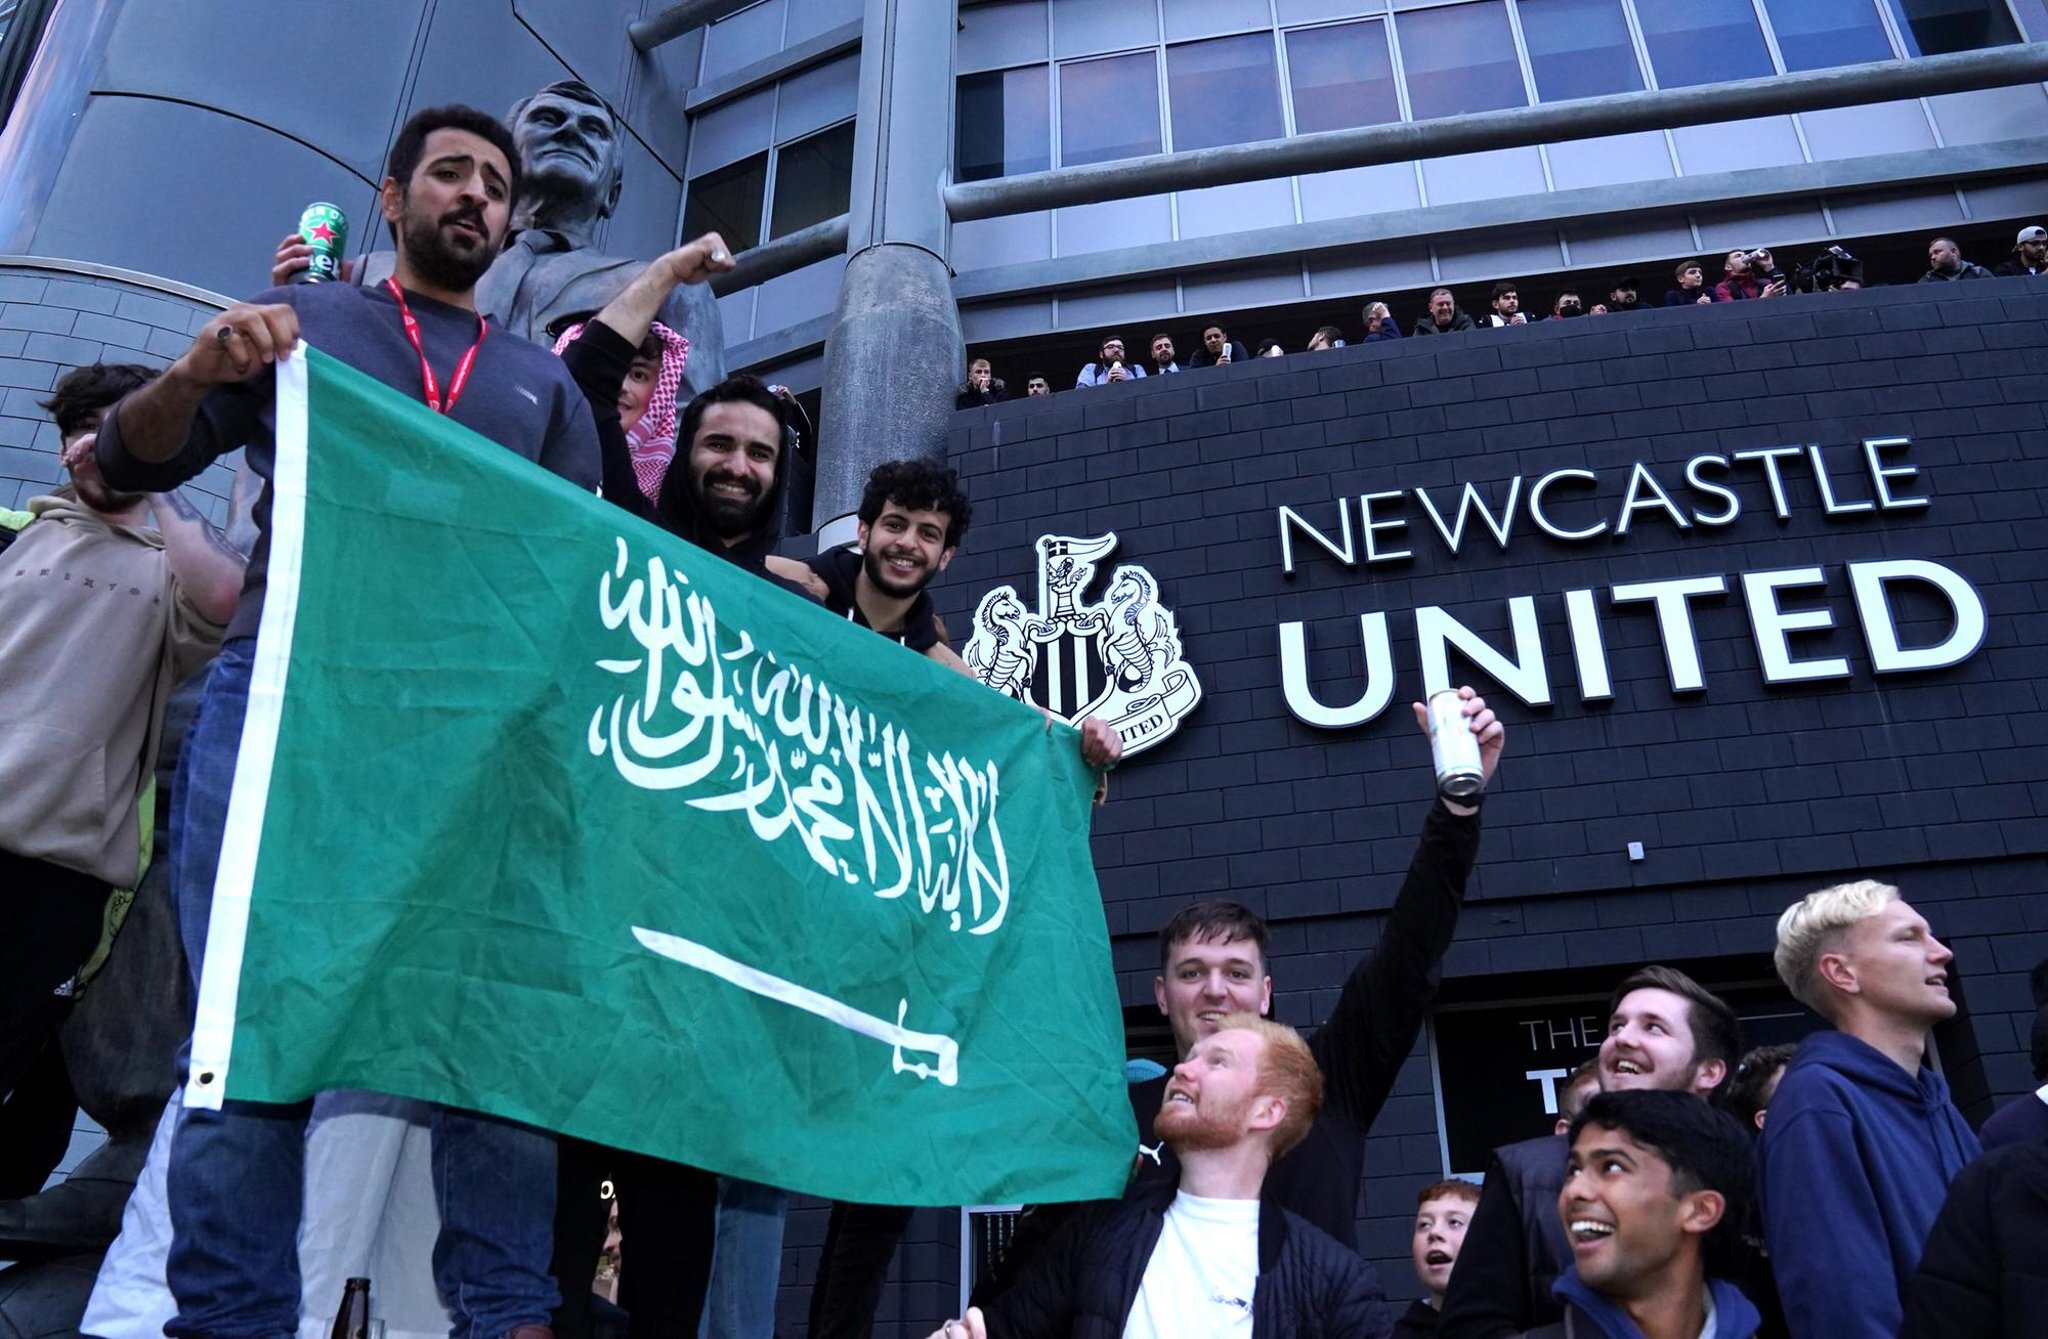 Фанаты Ньюкасла, протестующие против саудовских владельцев, получали угрозы в соцсетях. Они утверждают, что за атакой троллей стоят власти Саудовской